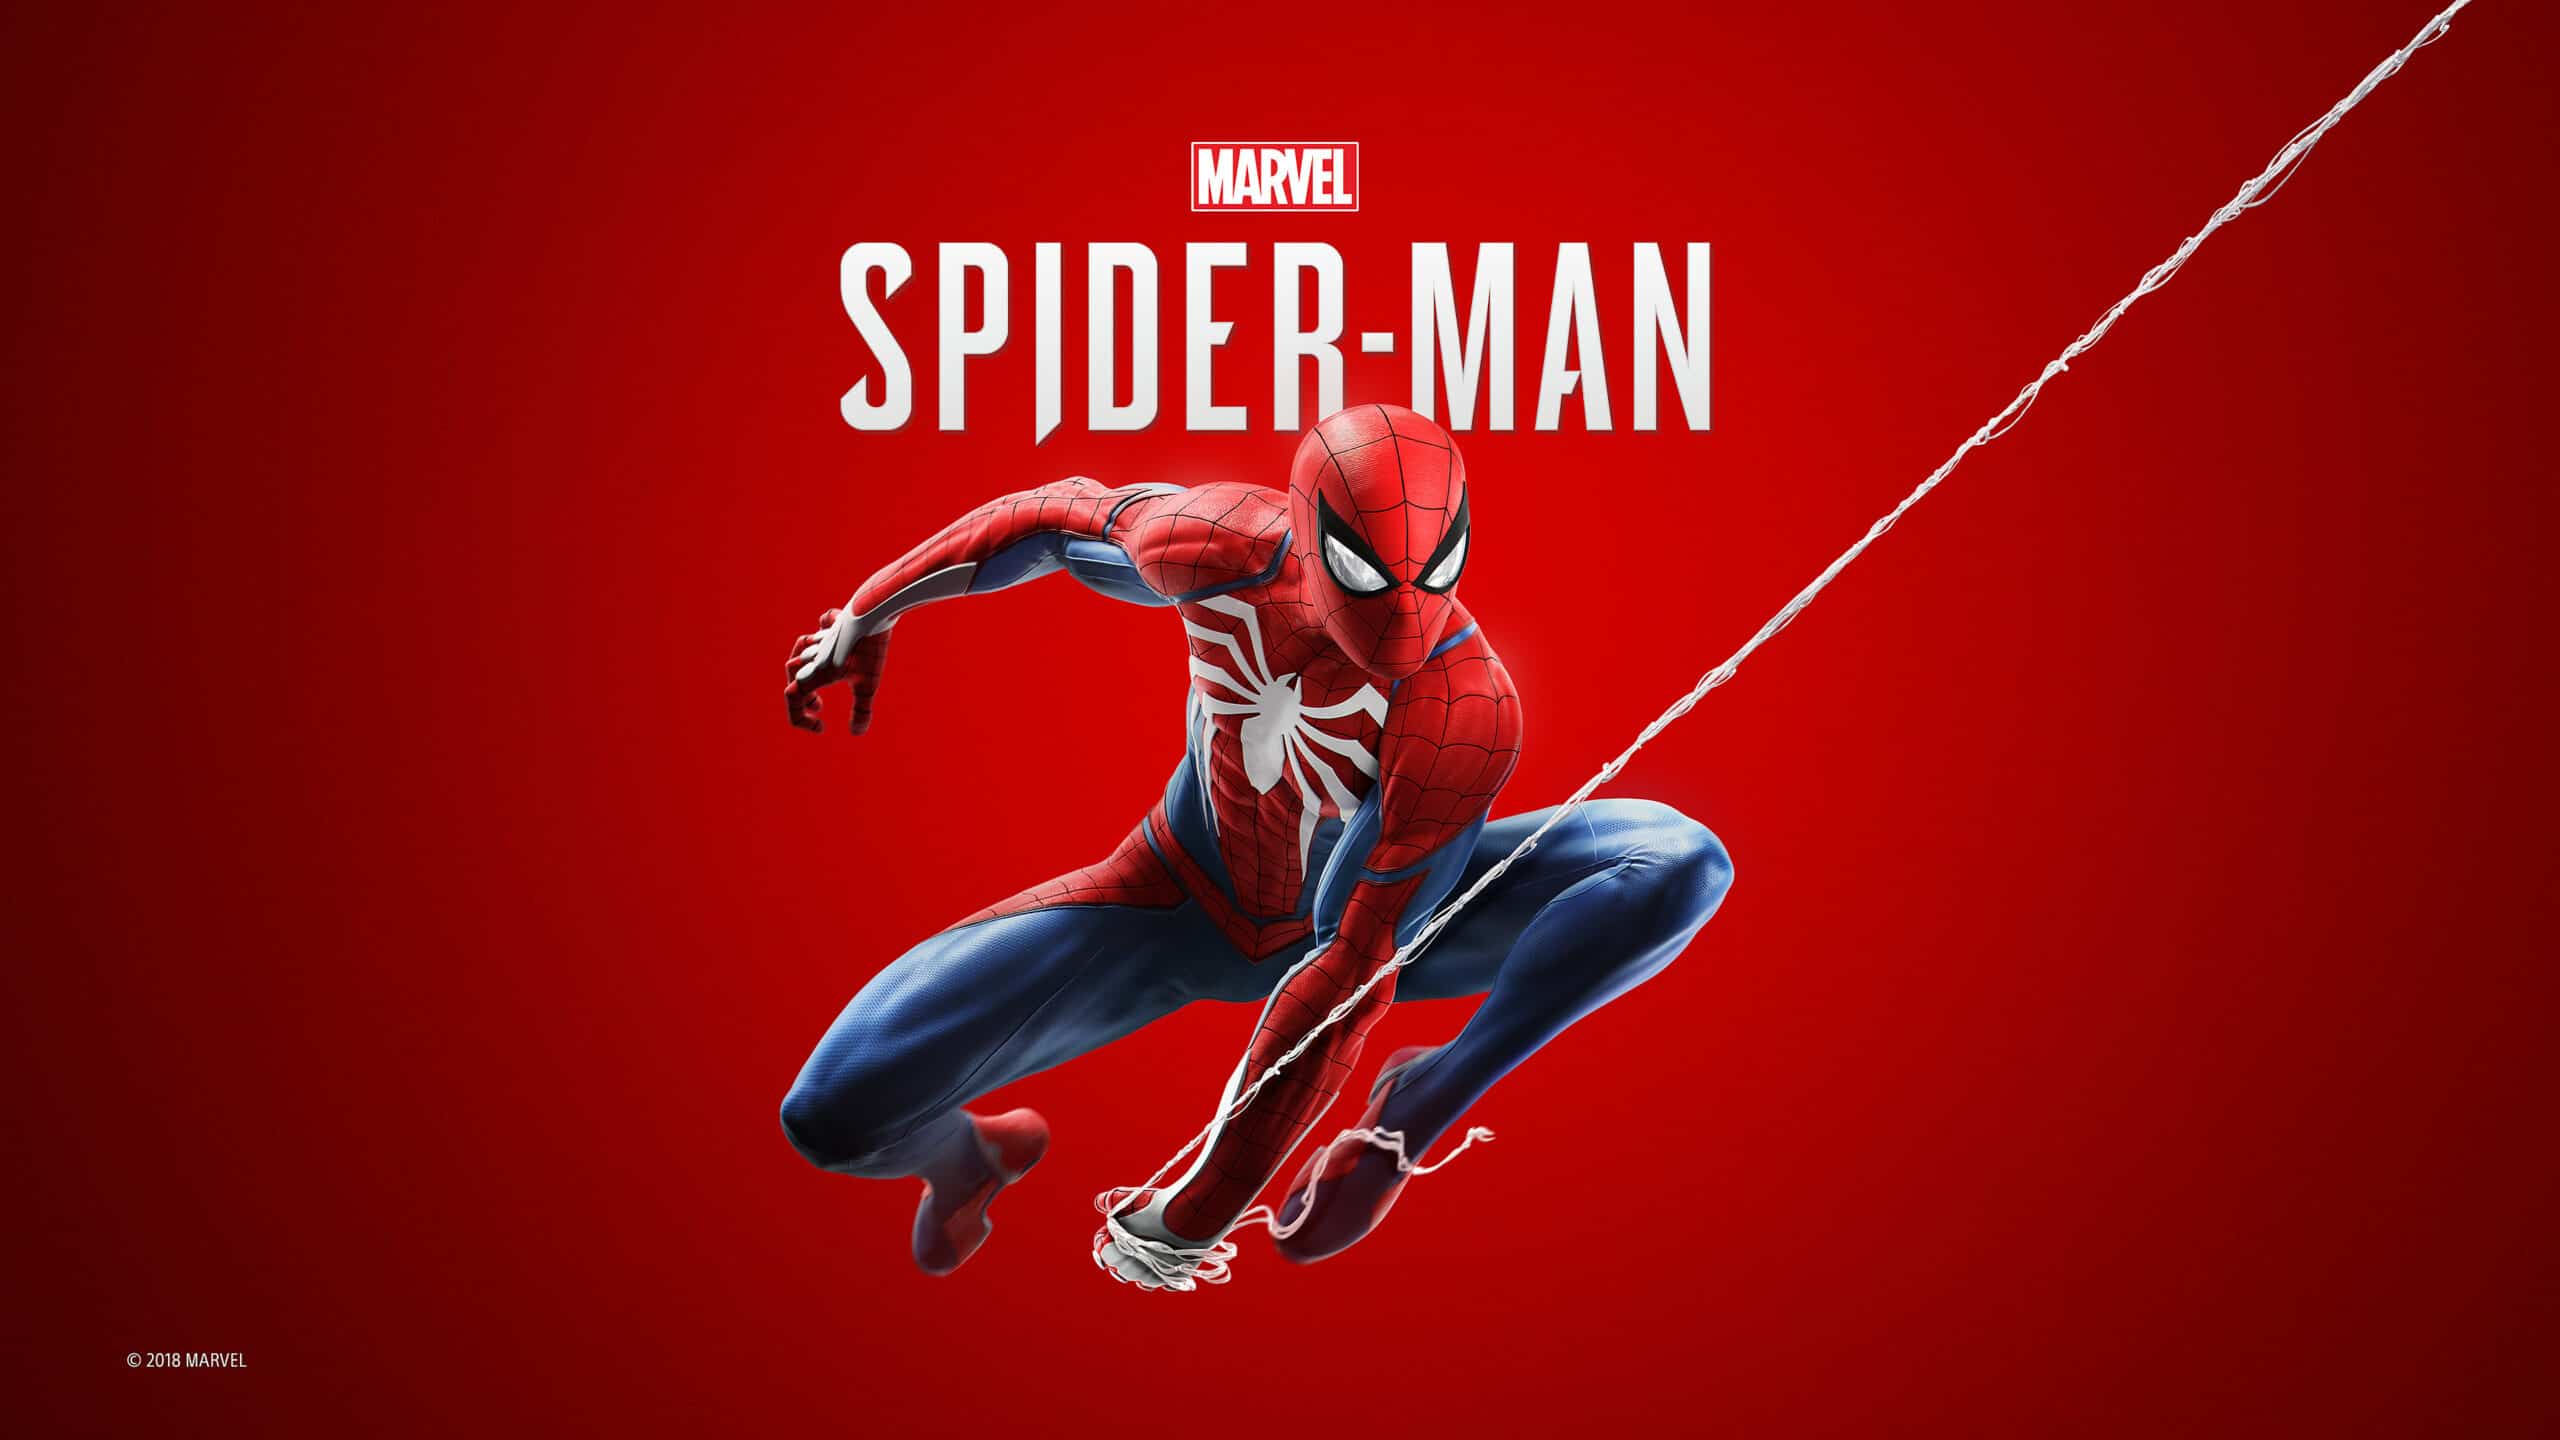 Meilleures ventes de jeux Ps4 - Spider-Man